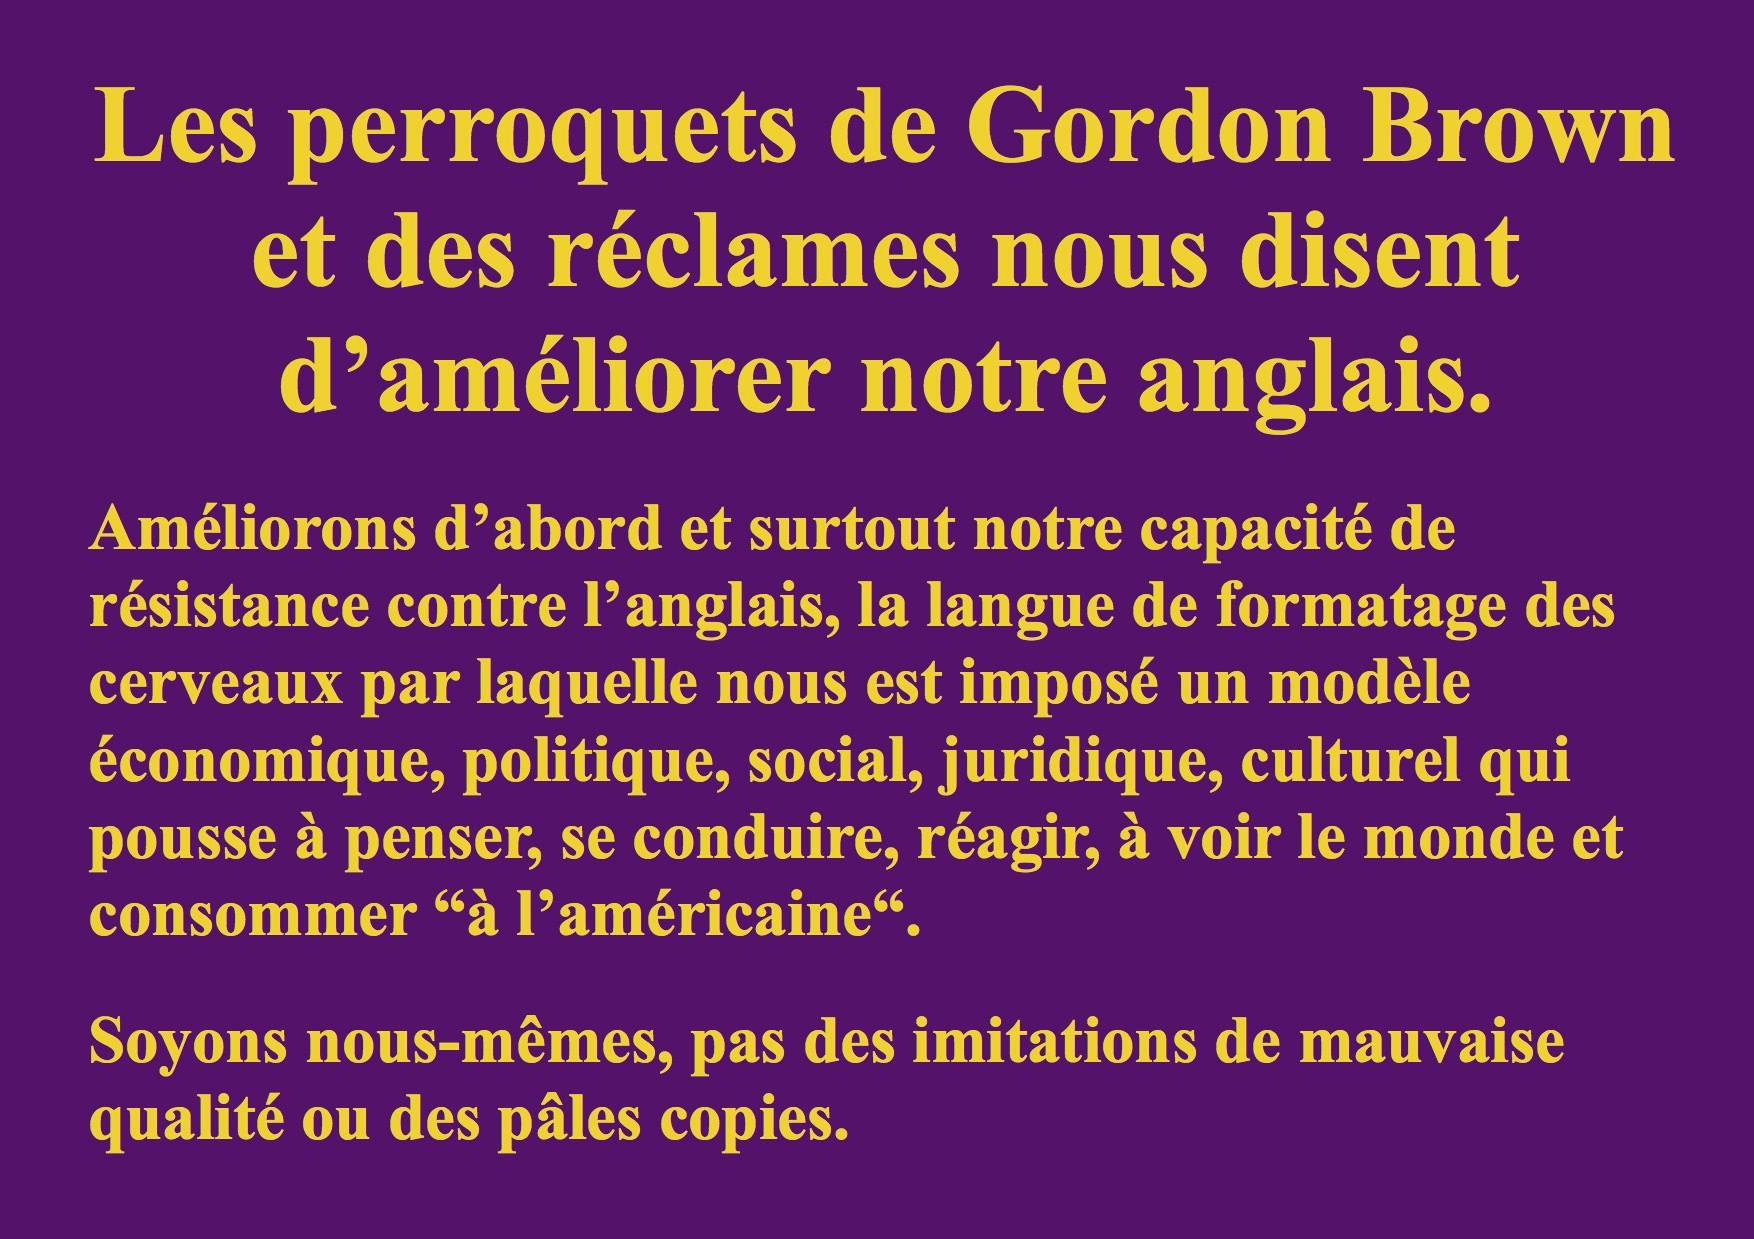 Les perroquets de Gordon Brown